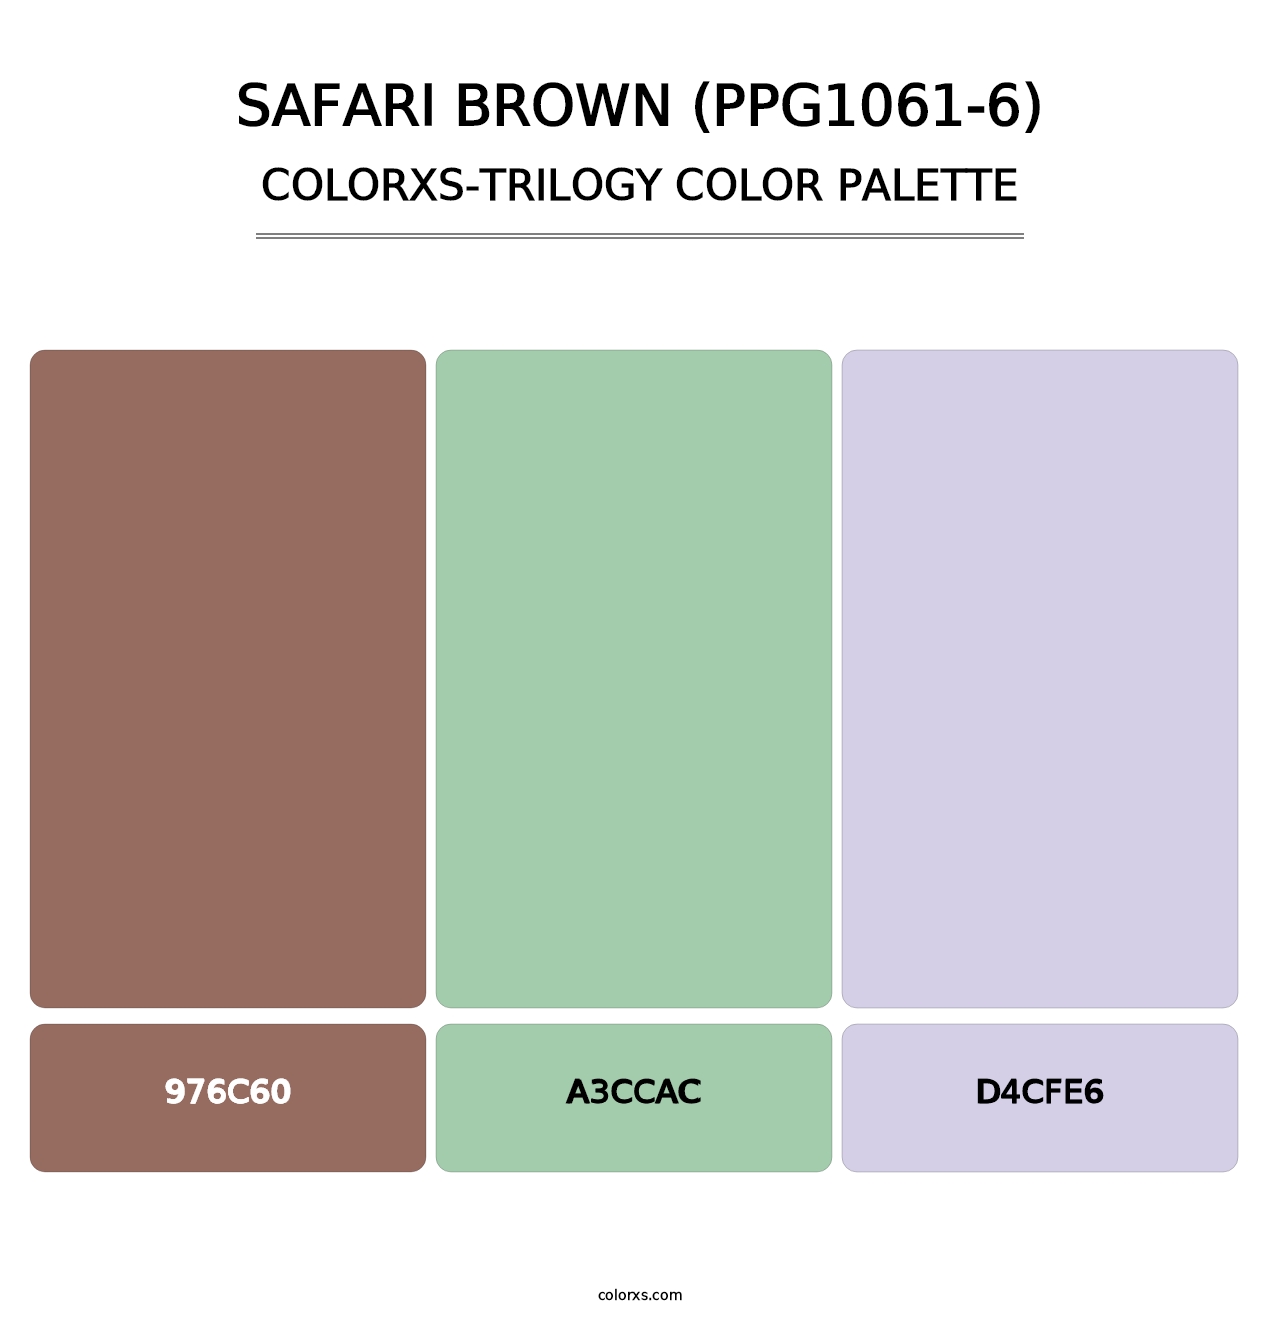 Safari Brown (PPG1061-6) - Colorxs Trilogy Palette